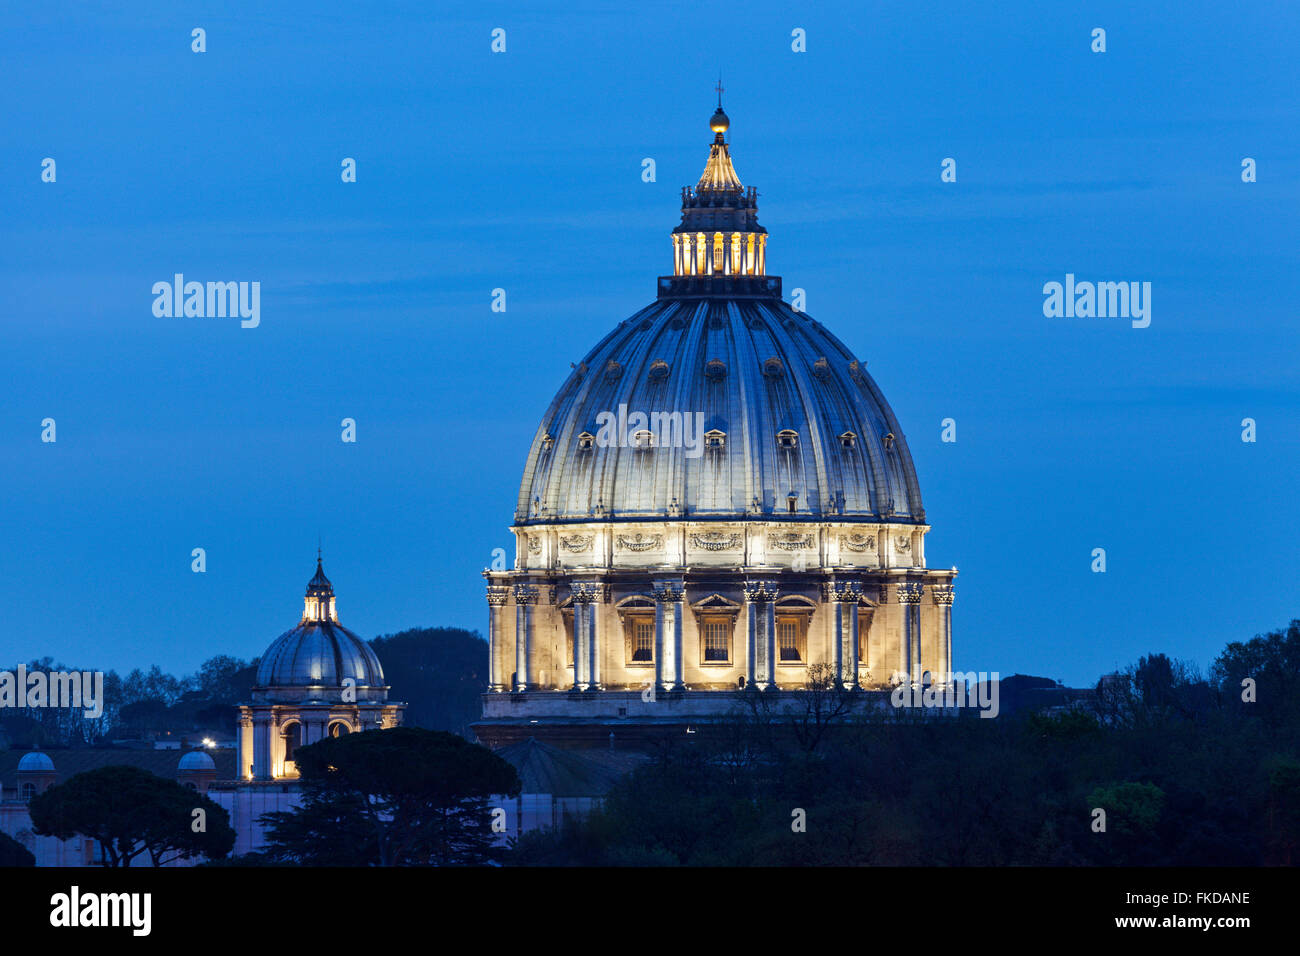 Illuminated St. Peter's Basilica at dusk Stock Photo